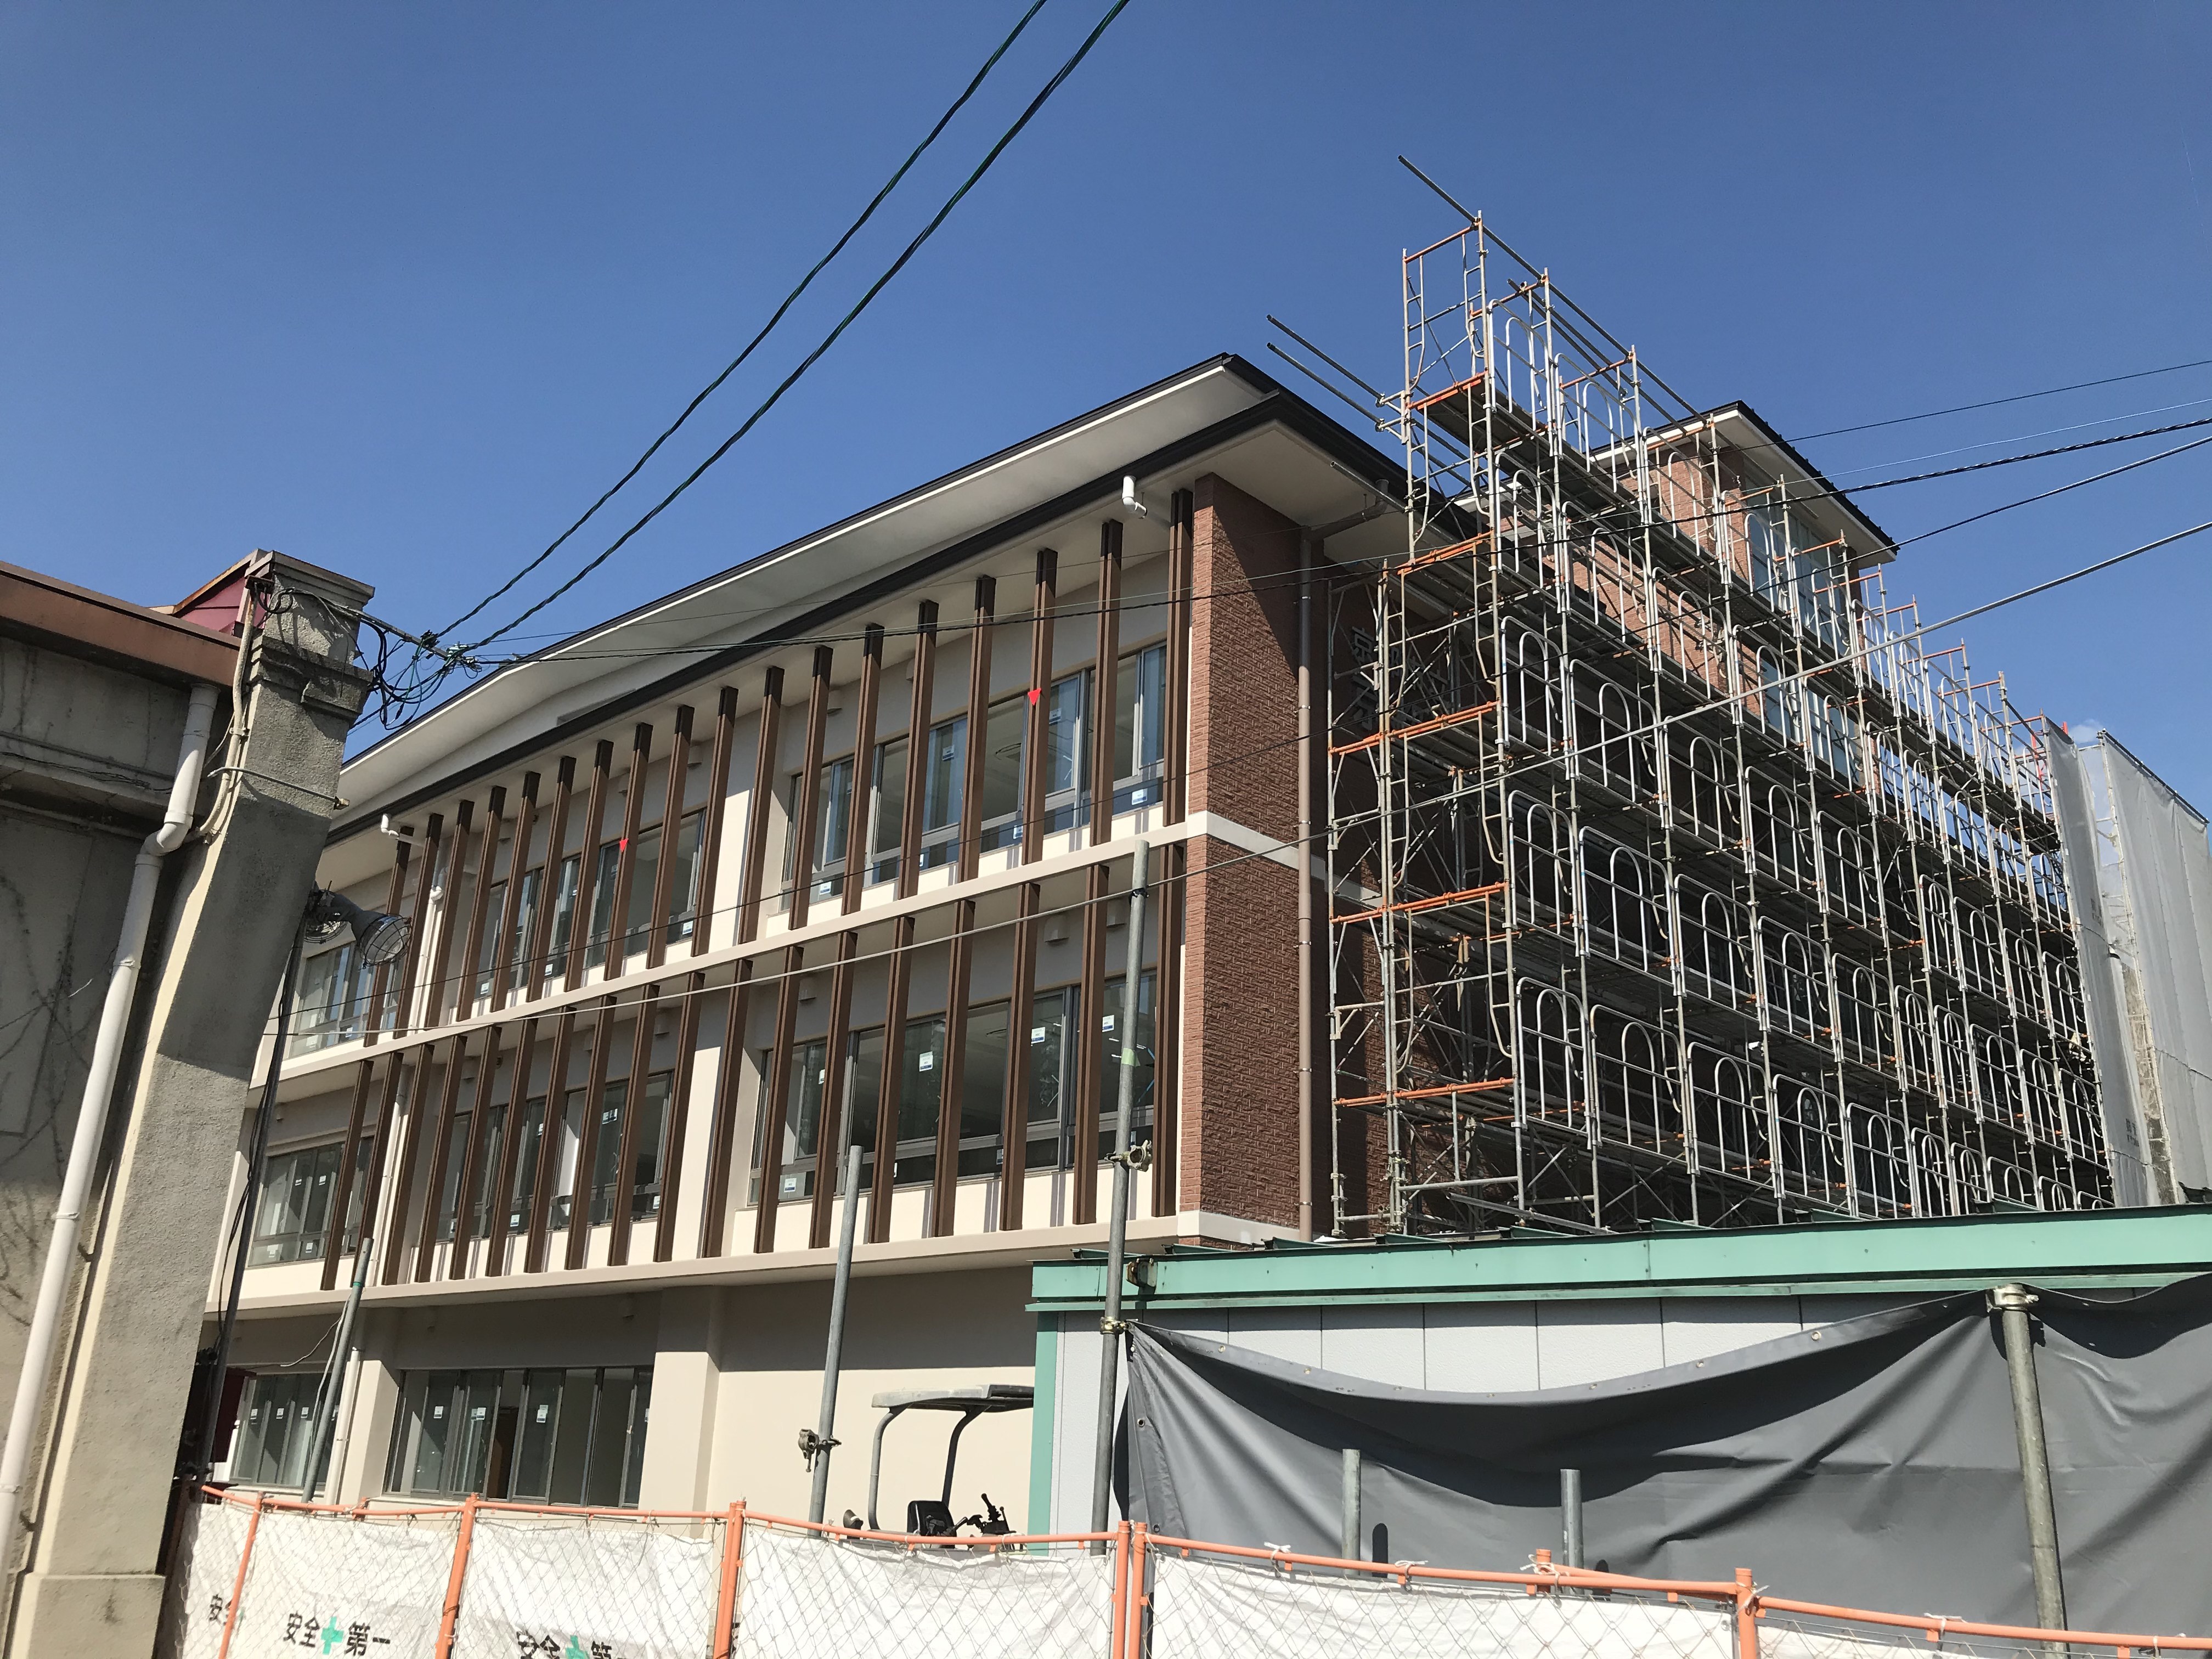 京都市教育委員会事務局 京都奏和高校校舎の工事が進んでいます